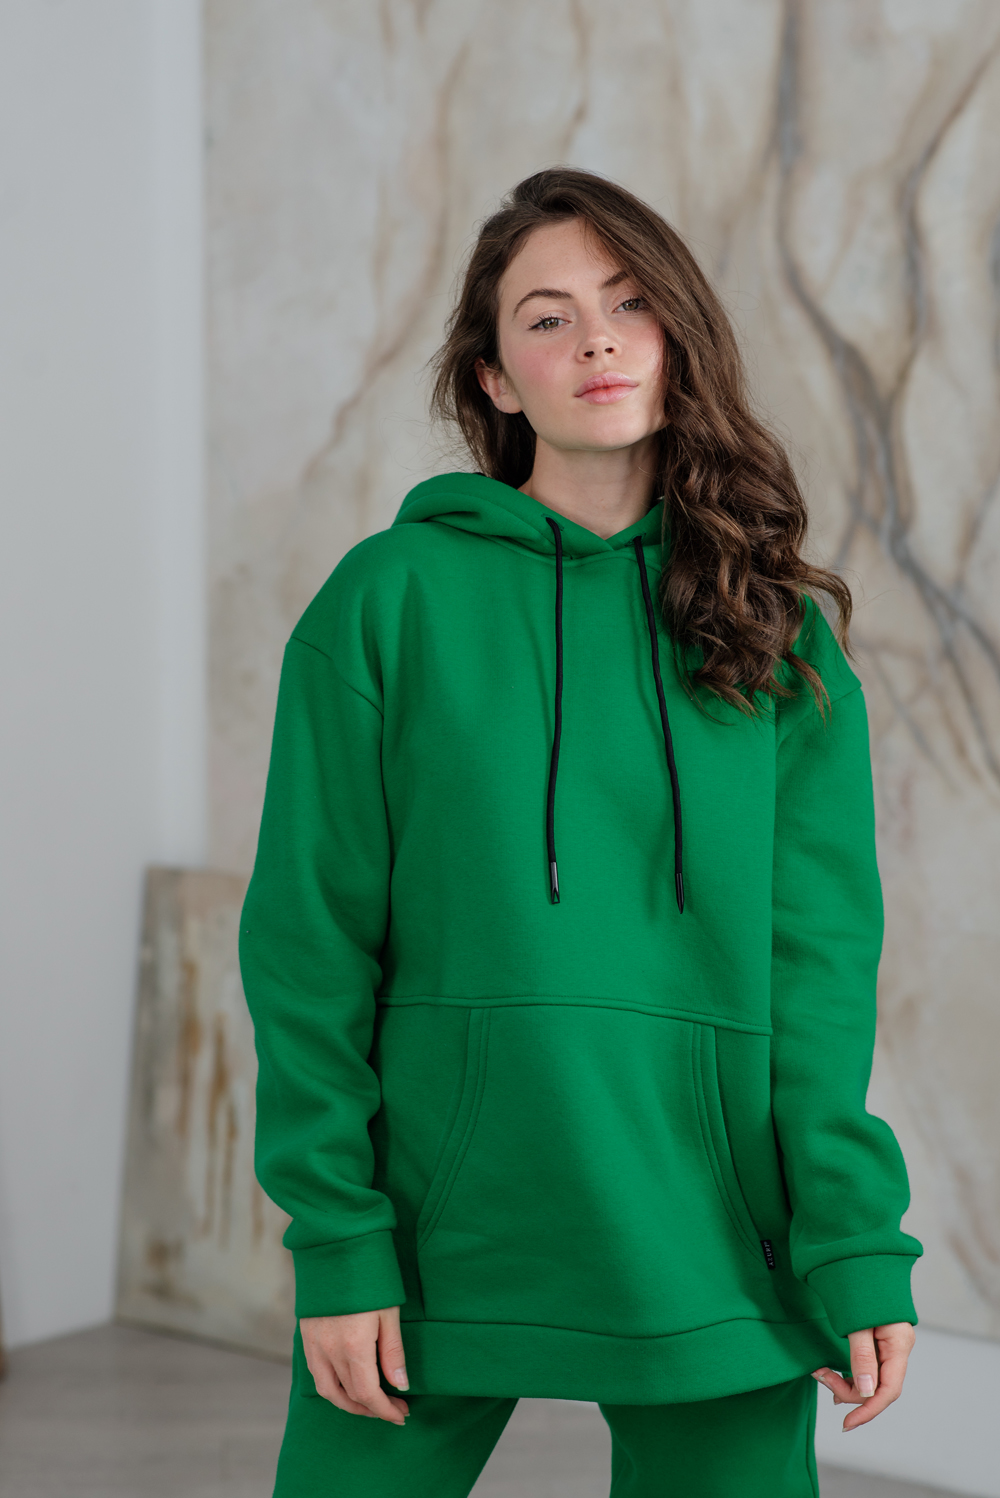 Green sweatshirt with a hood